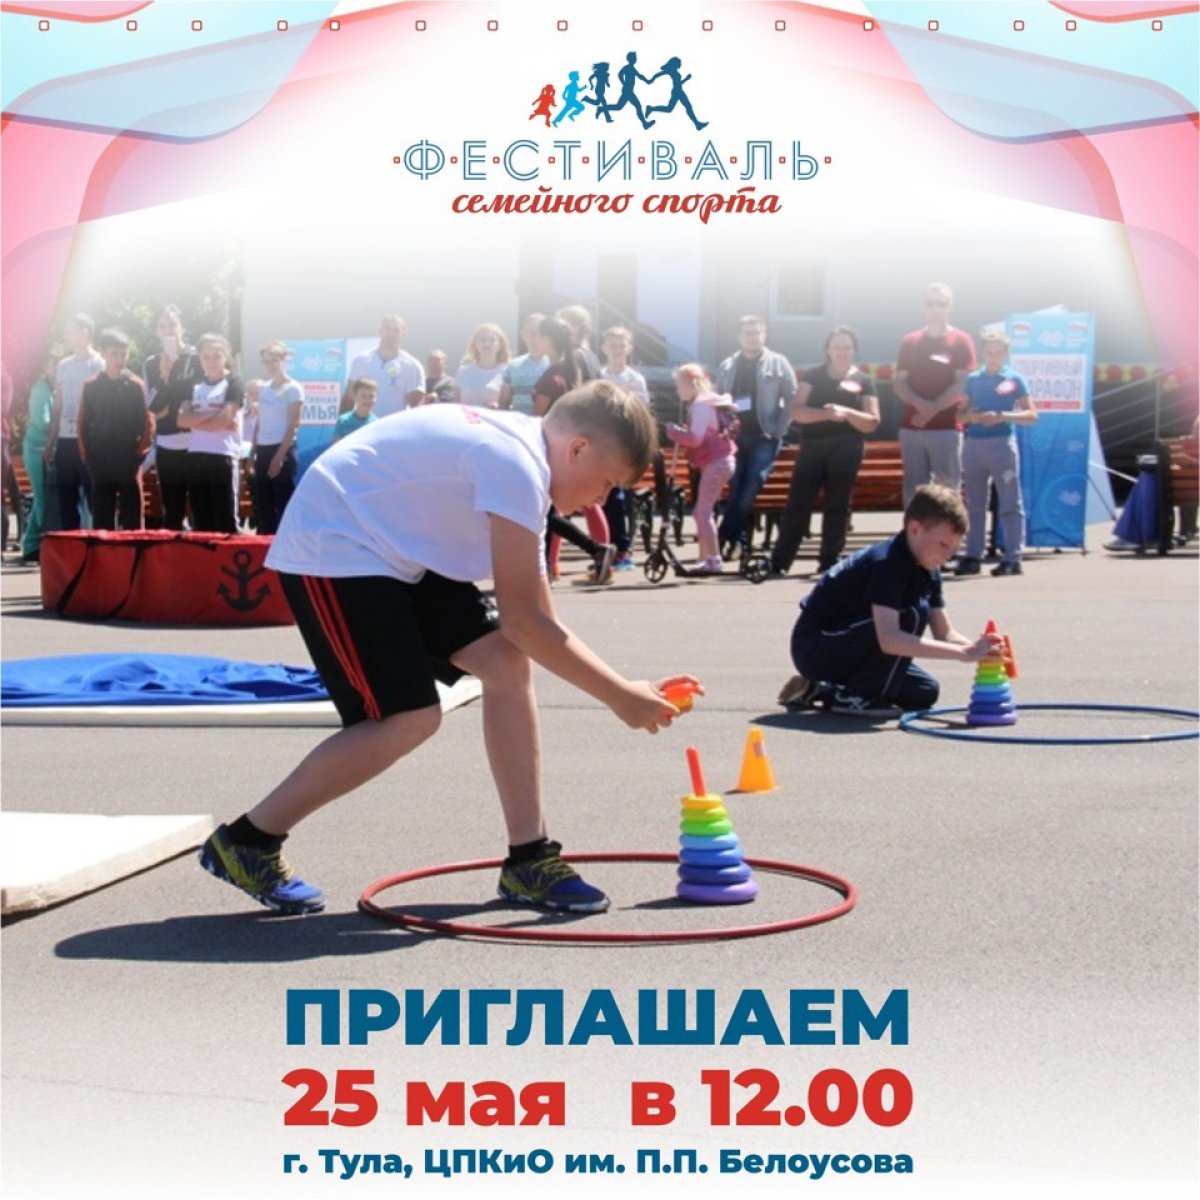 25 мая в Центральном парке имени Белоусова туляков и гостей города ждет самое динамичное и яркое событие весны — фестиваль семейного спорта!